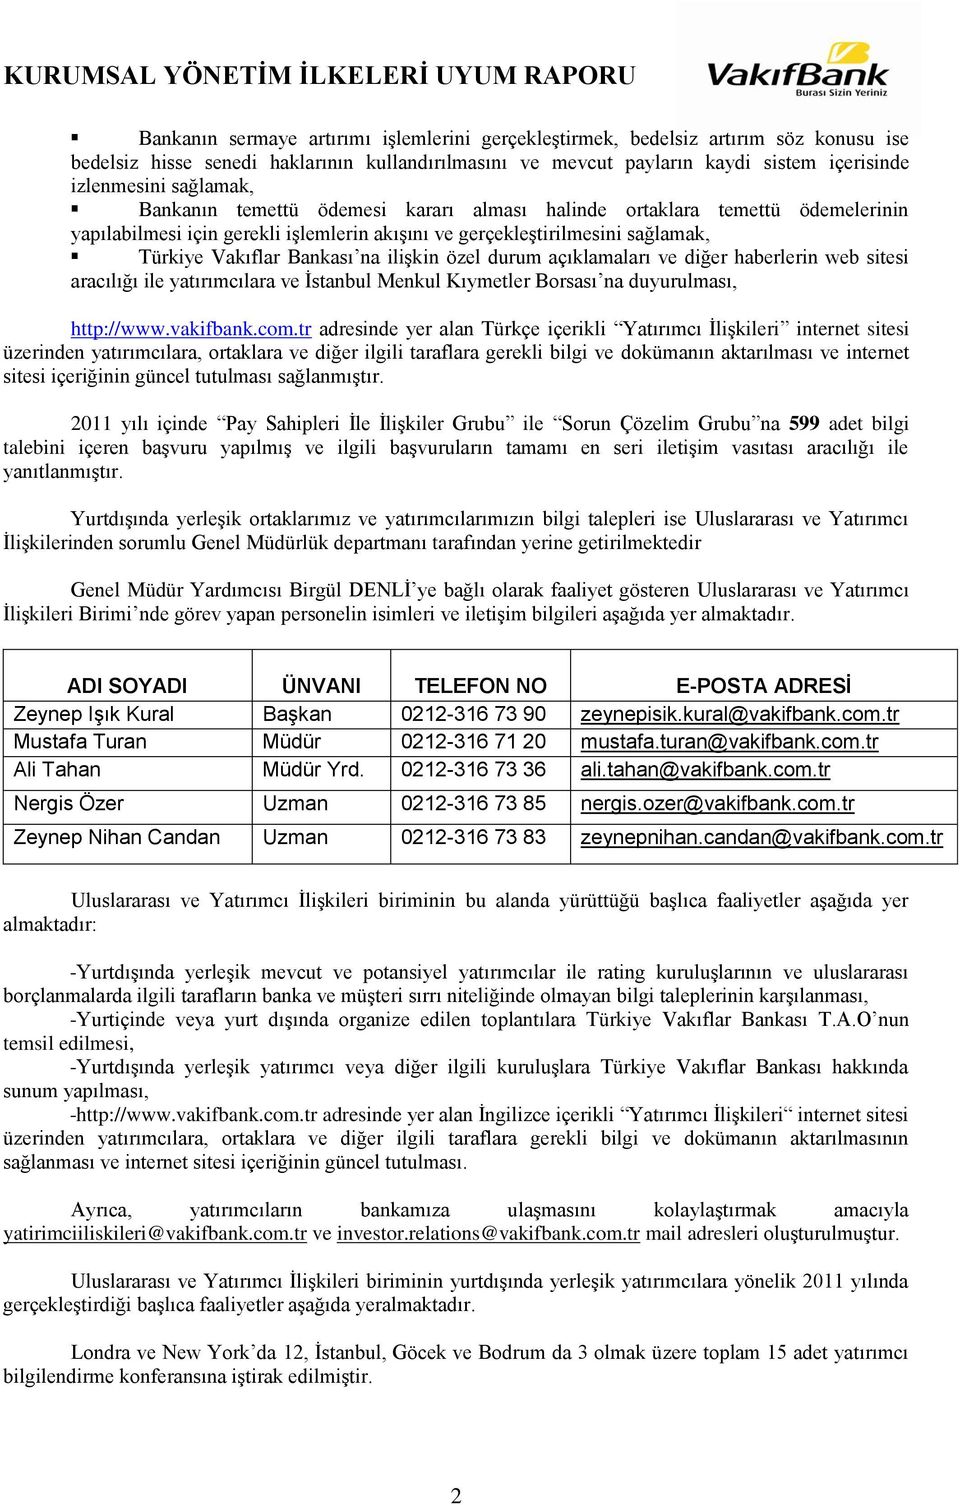 ilişkin özel durum açıklamaları ve diğer haberlerin web sitesi aracılığı ile yatırımcılara ve İstanbul Menkul Kıymetler Borsası na duyurulması, http://www.vakifbank.com.